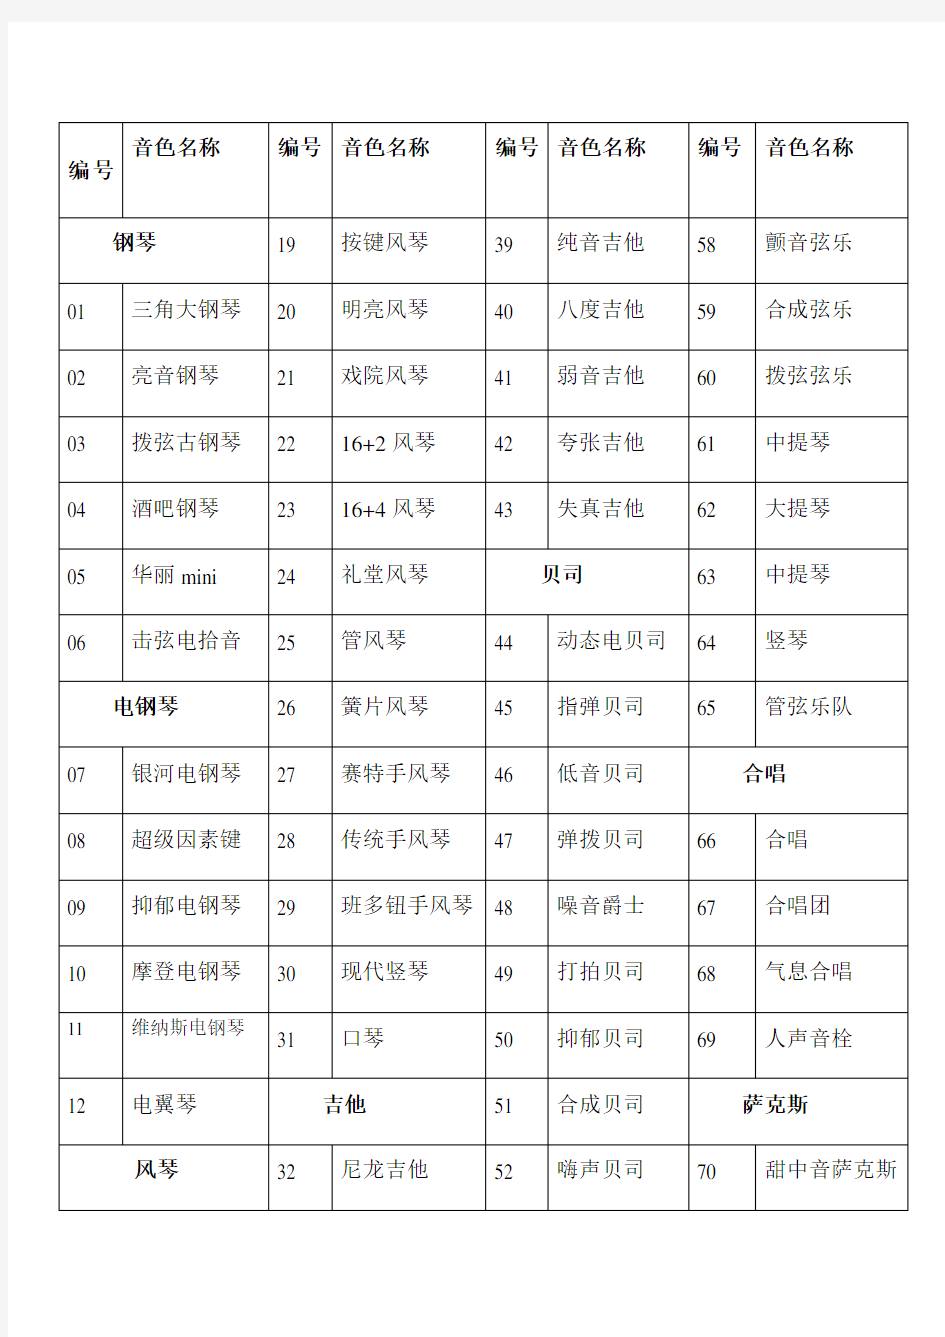 雅马哈psre电子琴音色中文一览表